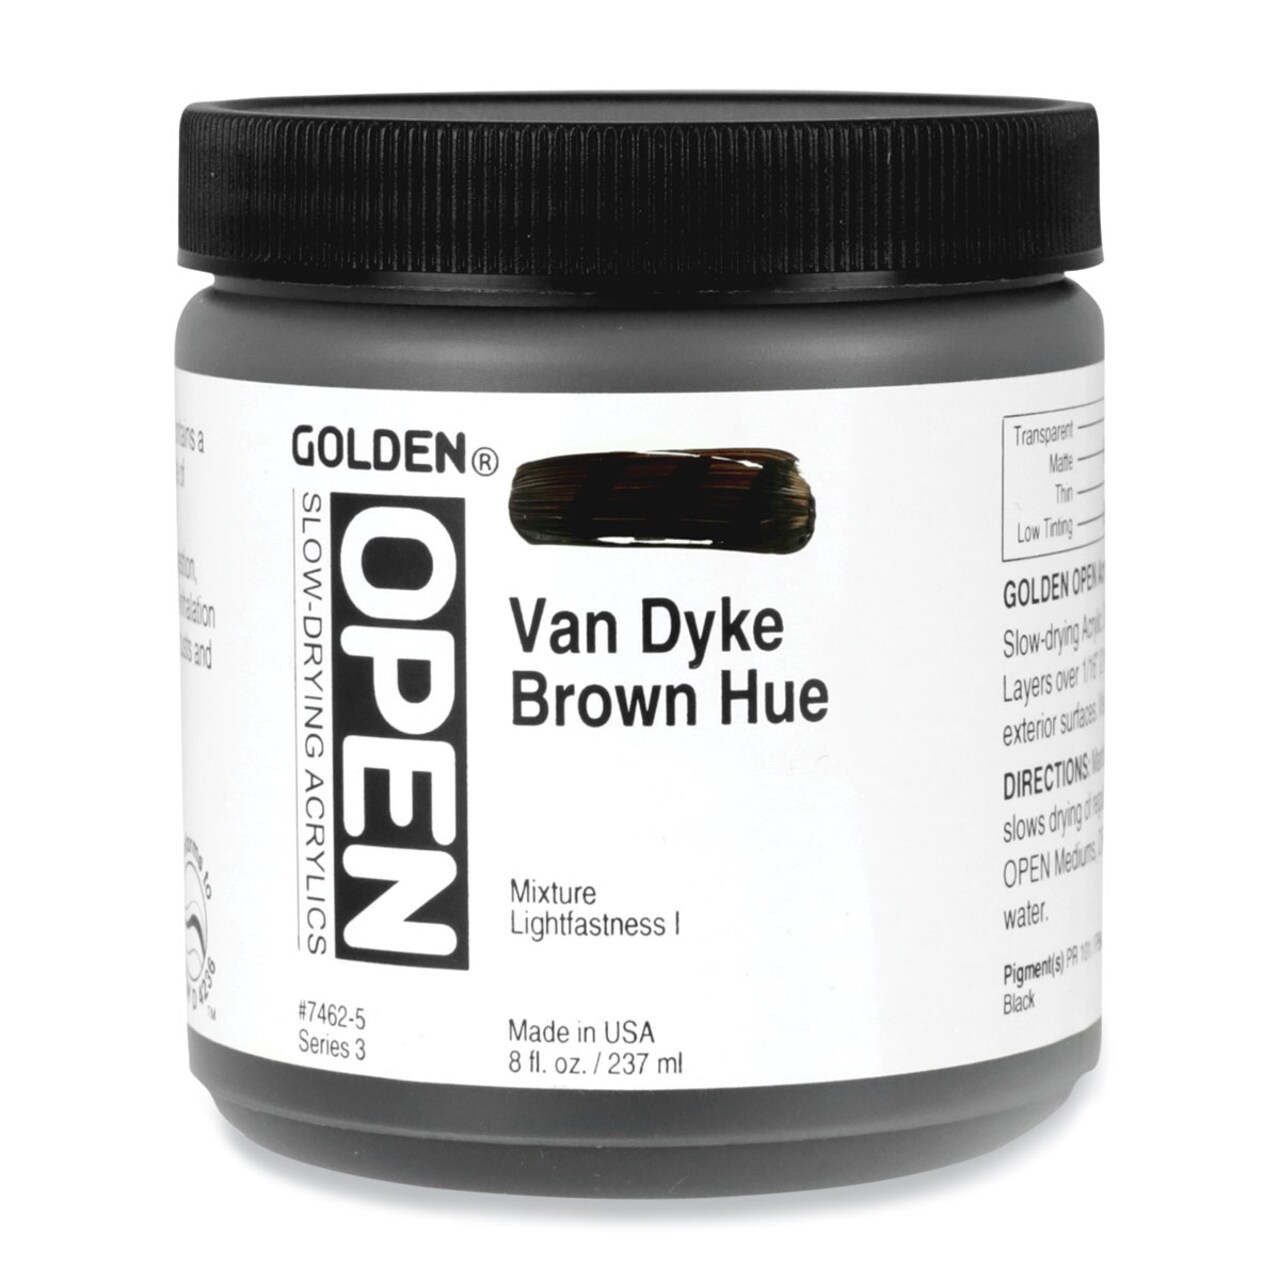 Golden Open Acrylics - VanDyke Brown Hue, 8 oz Jar